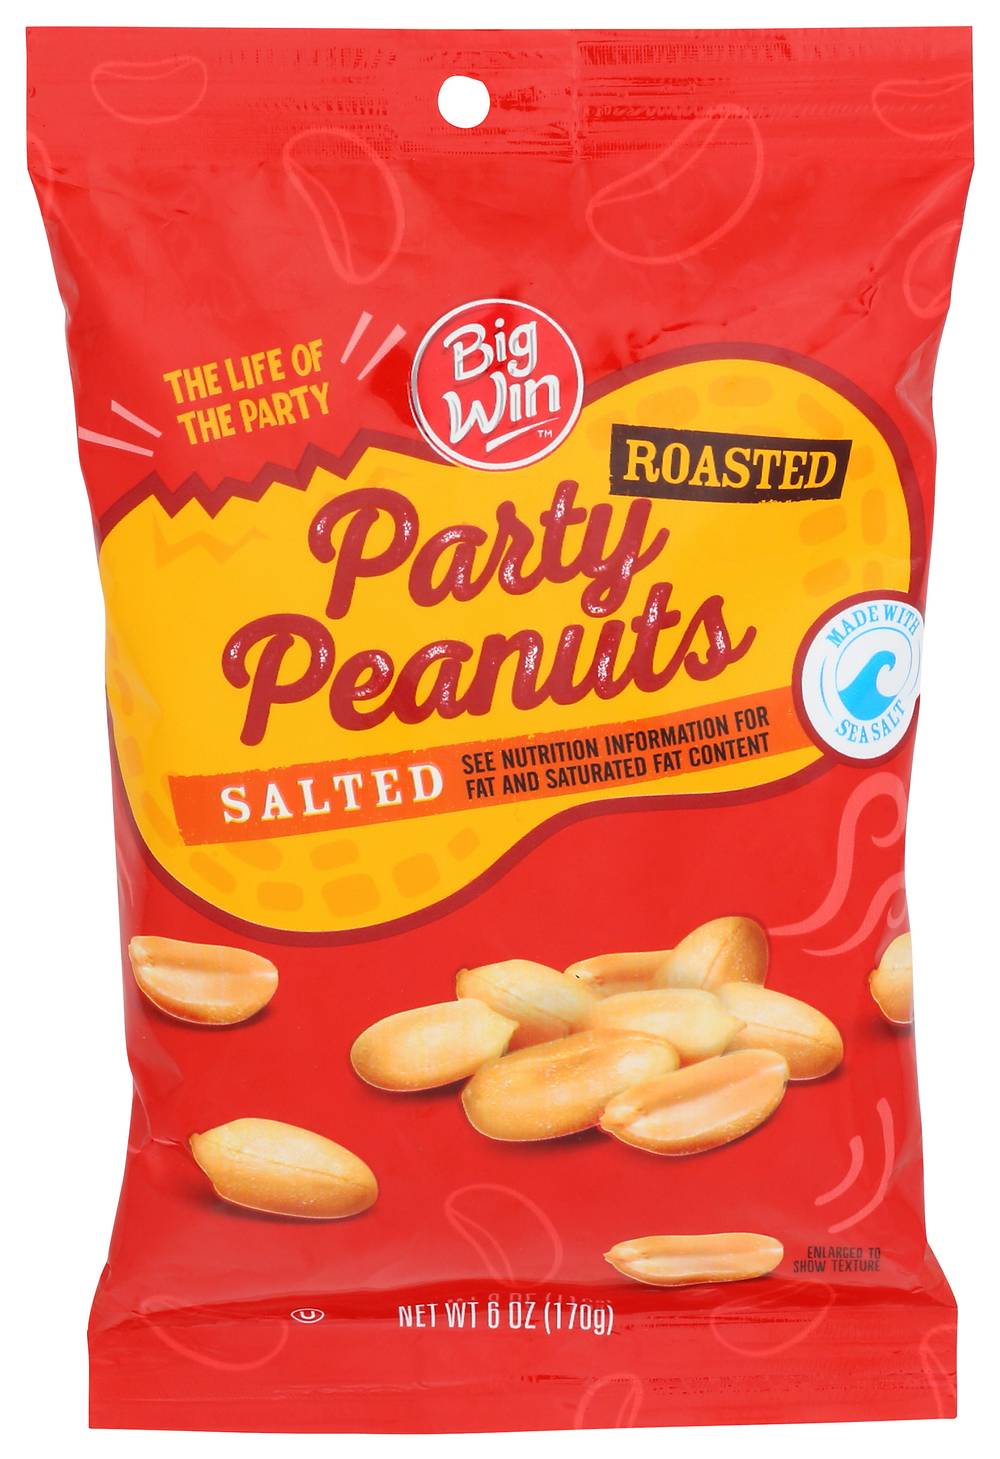 Big Win Roasted Salted Peanuts - 6 oz